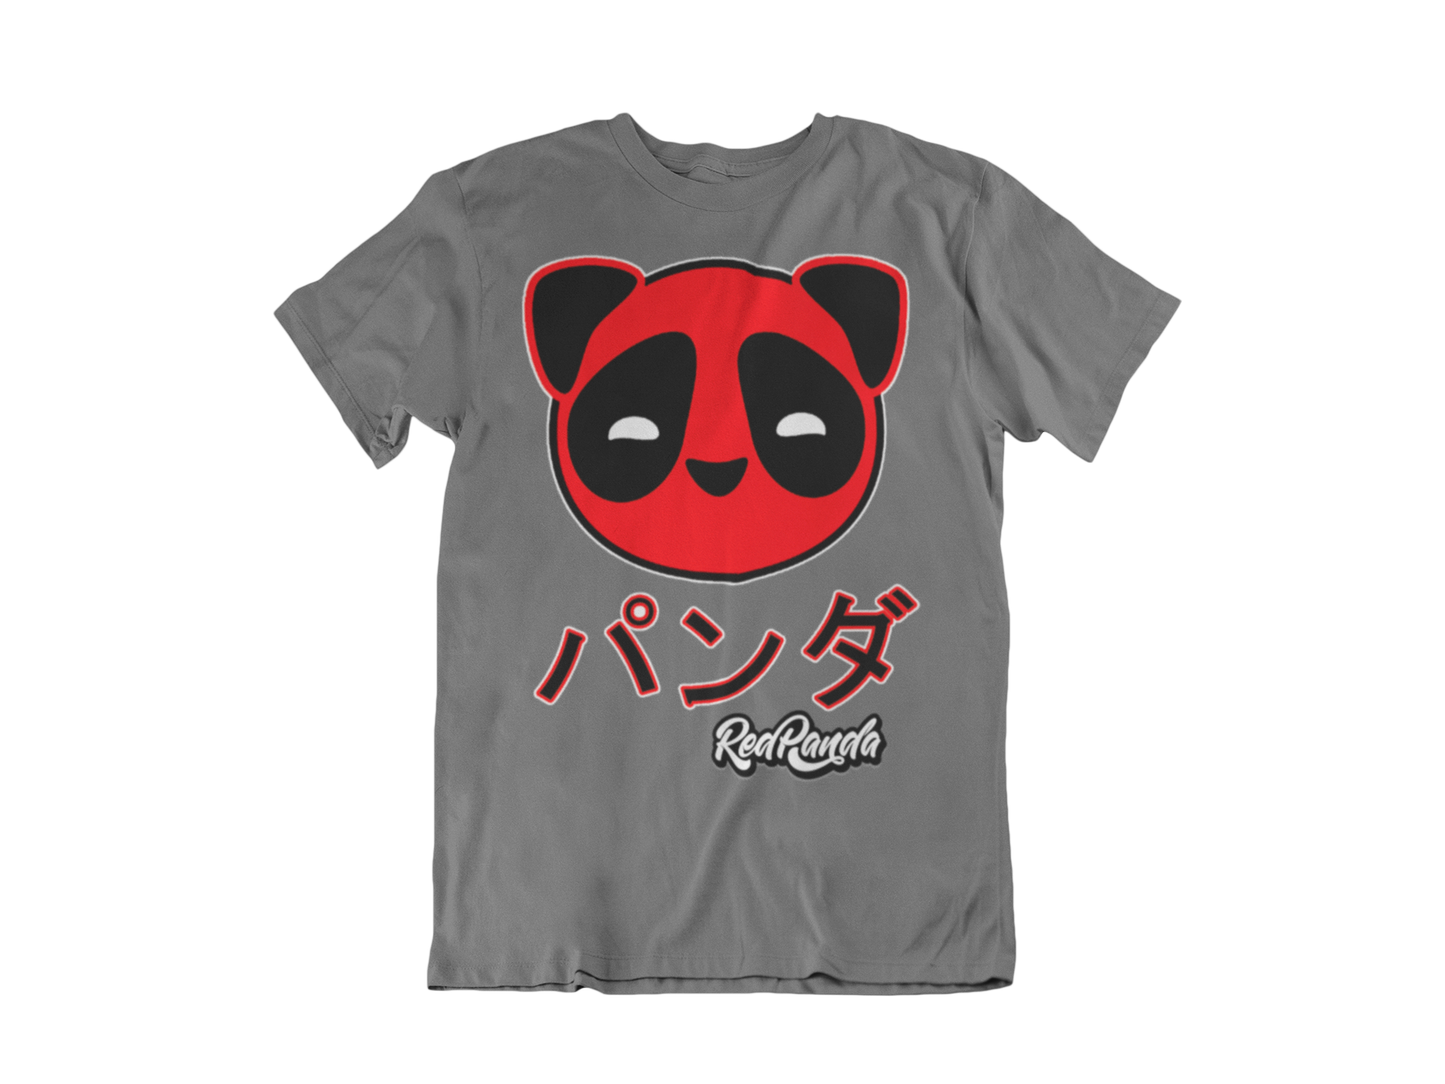 Original Red Panda Logo 2009 - Red Panda Clothing